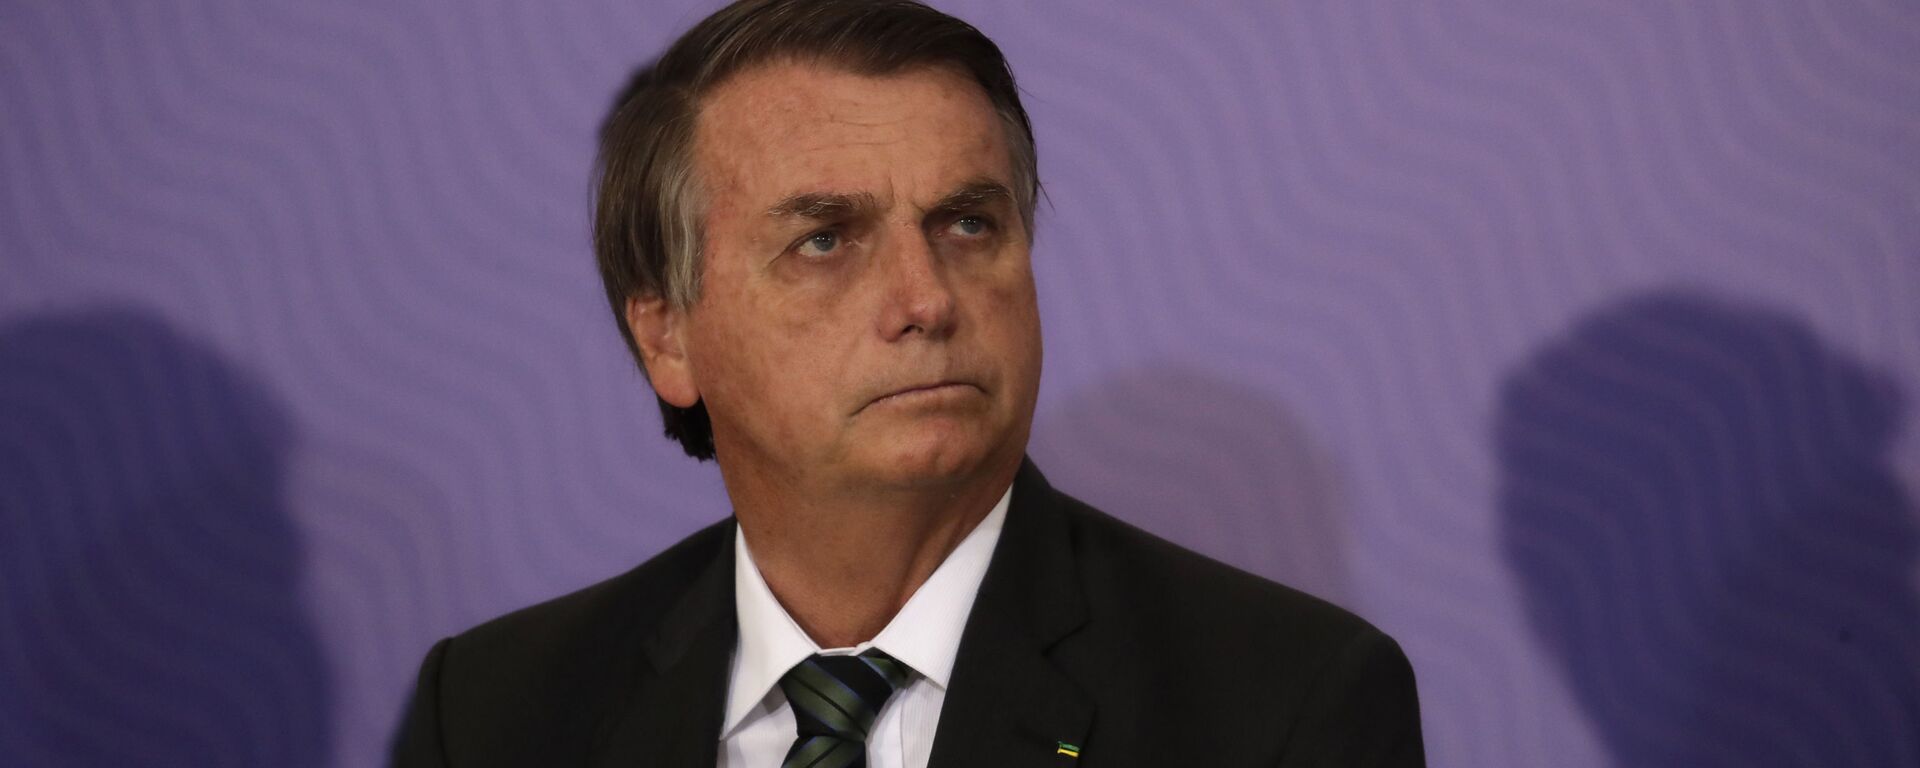 El presidente de Brasil, Jair Bolsonaro - Sputnik Mundo, 1920, 11.08.2021